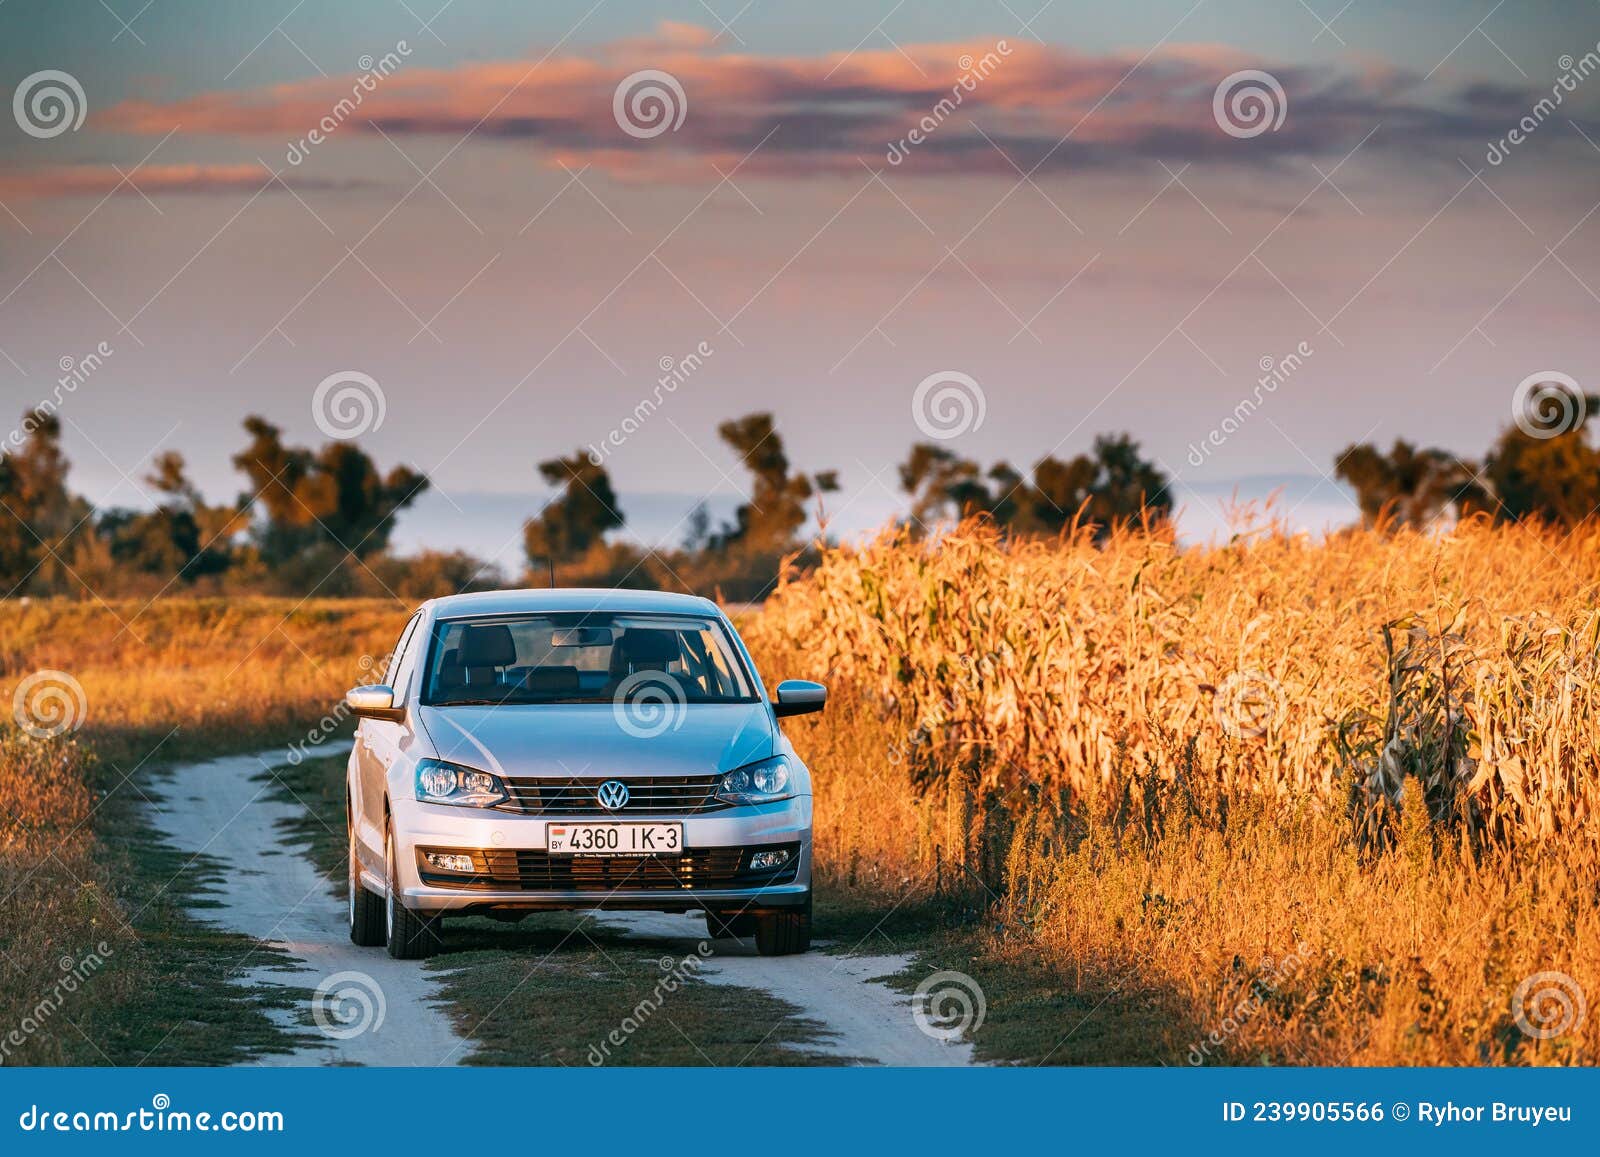 Volkswagen Polo Car Sedan Parking Near Country Road in Autumn Field in ...